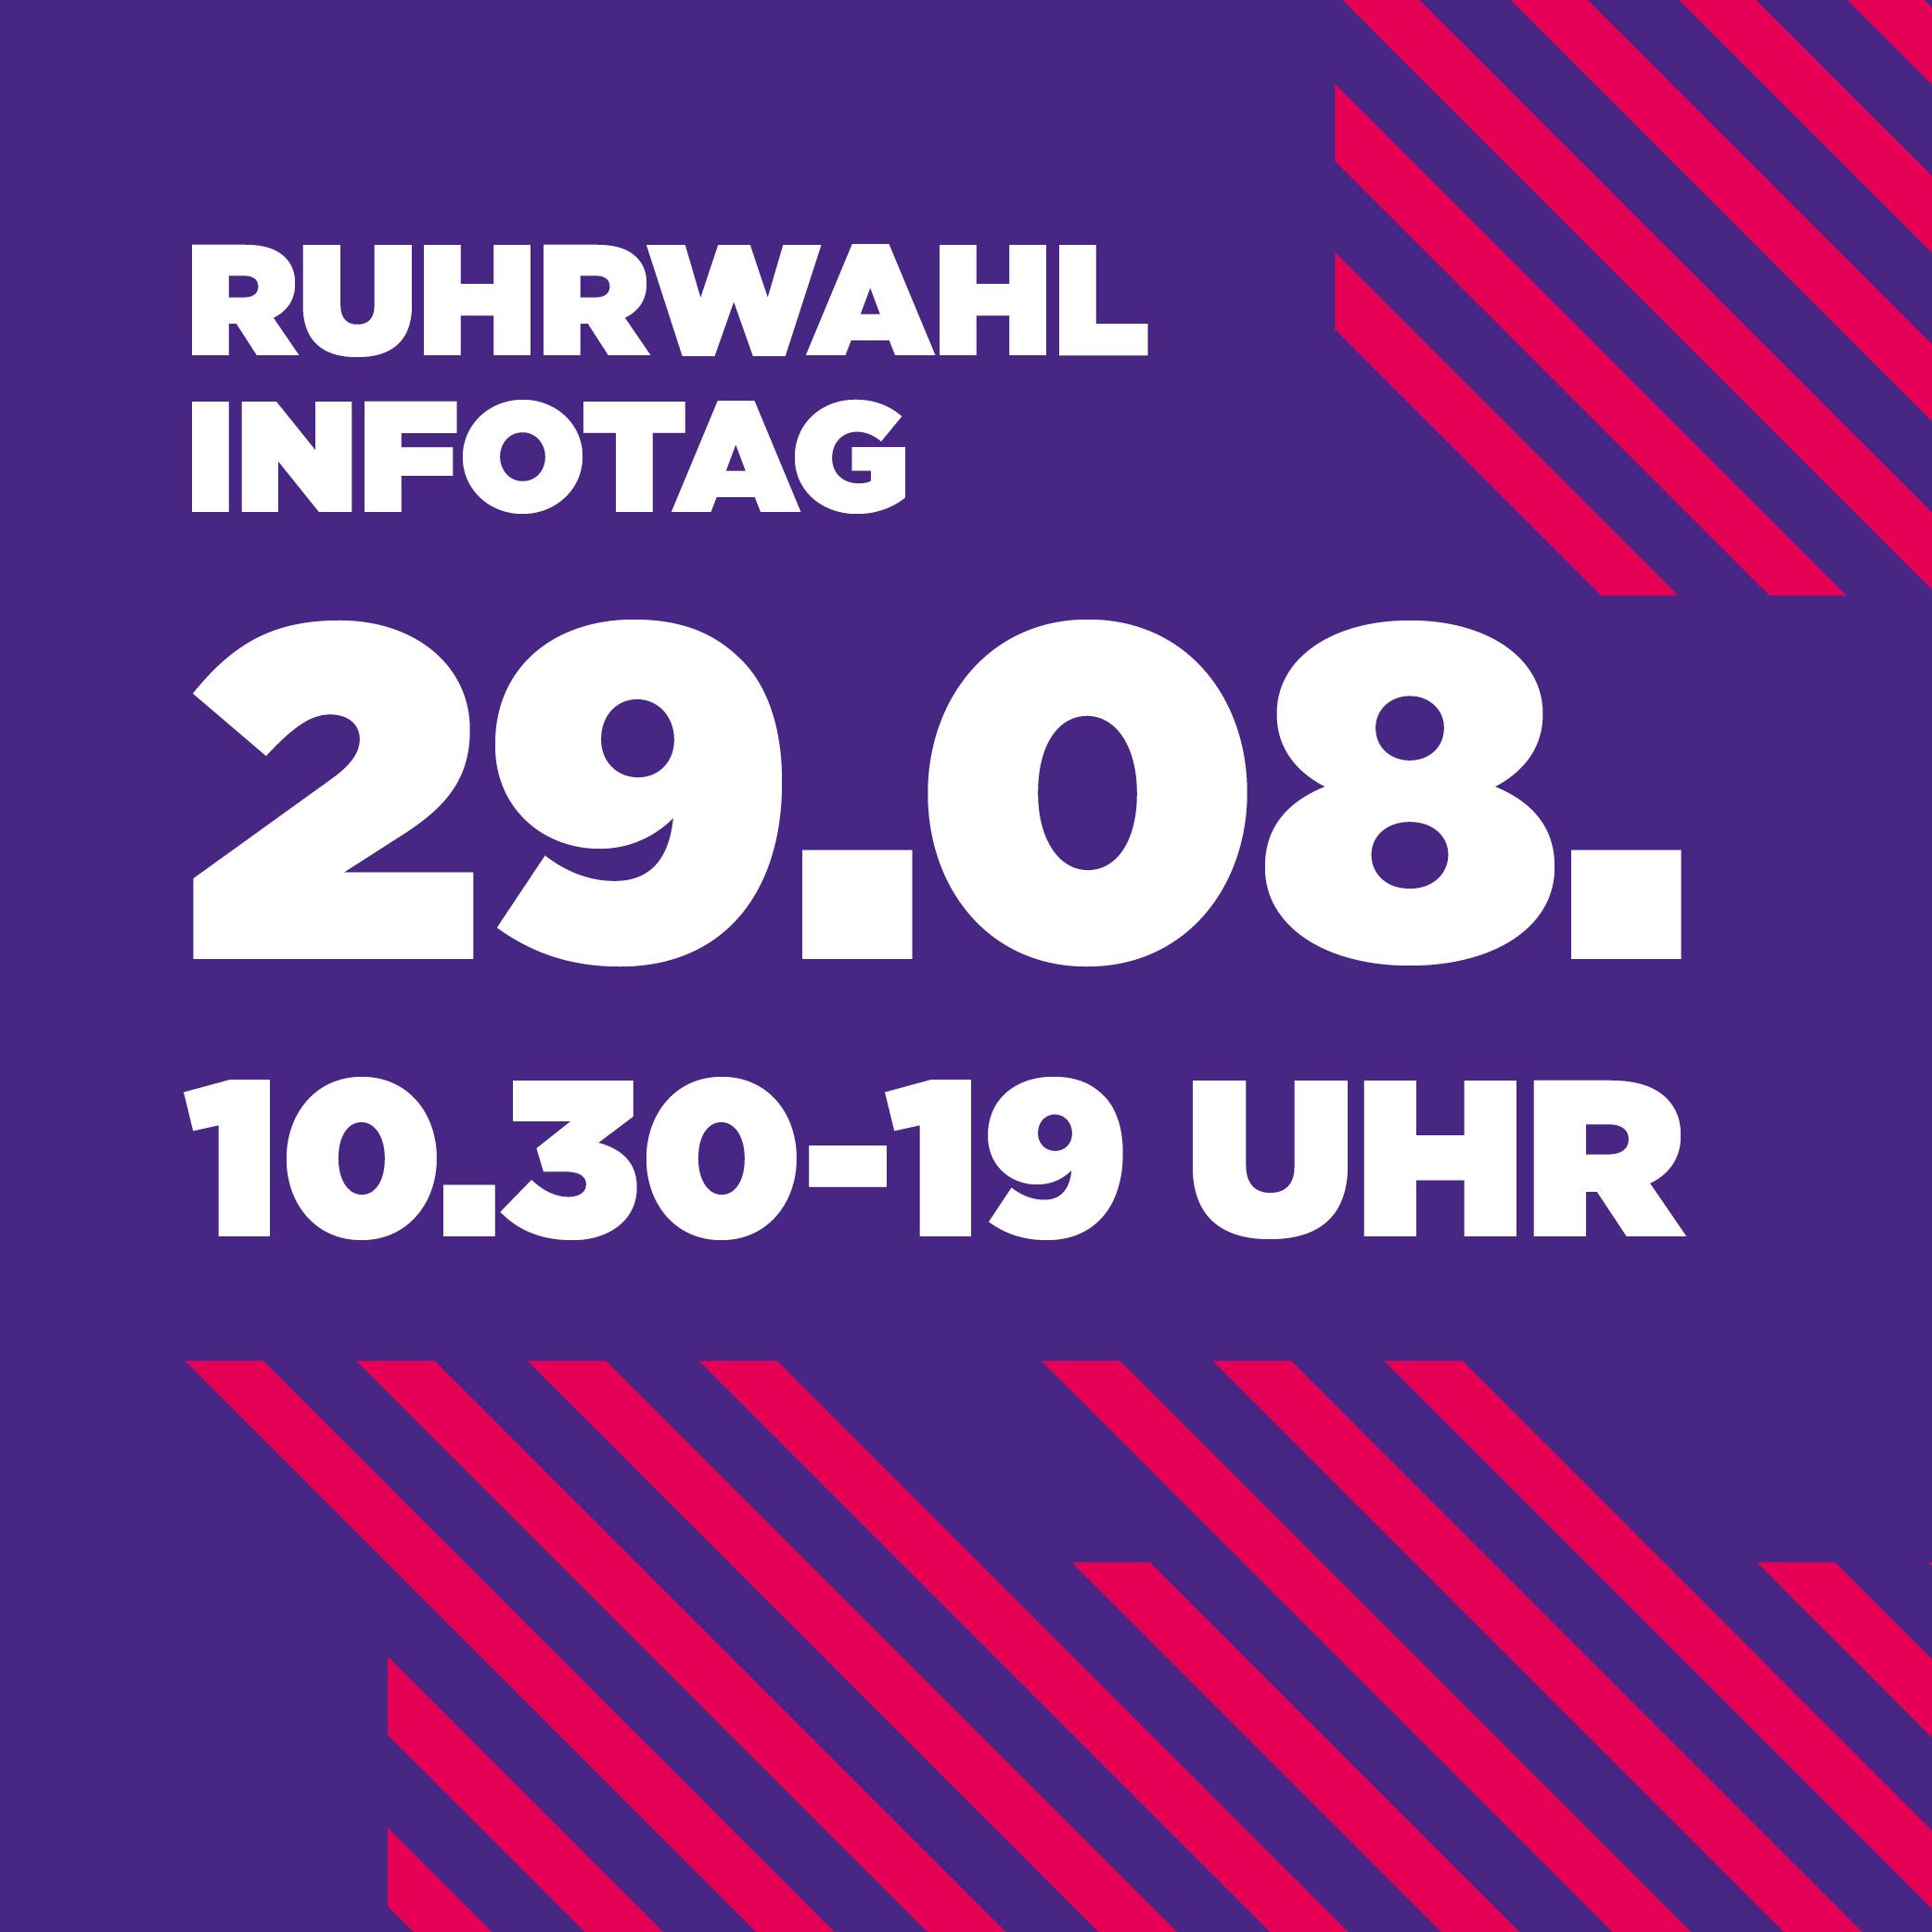 Label zum Aktionstag am 29. August für die Ruhrwahl am 13. September 2020.